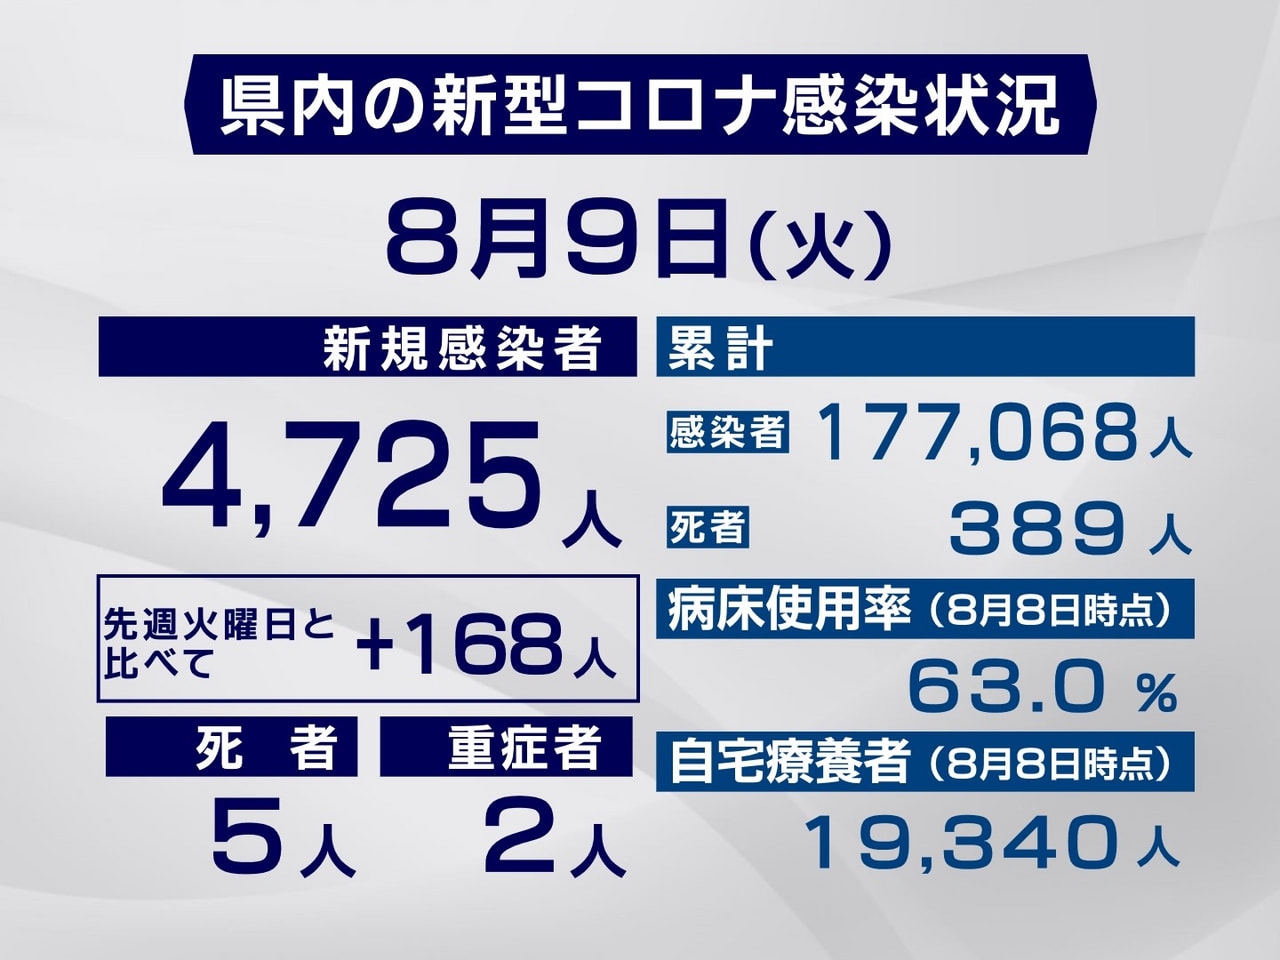 岐阜県は９日、新型コロナウイルスの新規感染者が過去最多となる４７２５人、また、５...